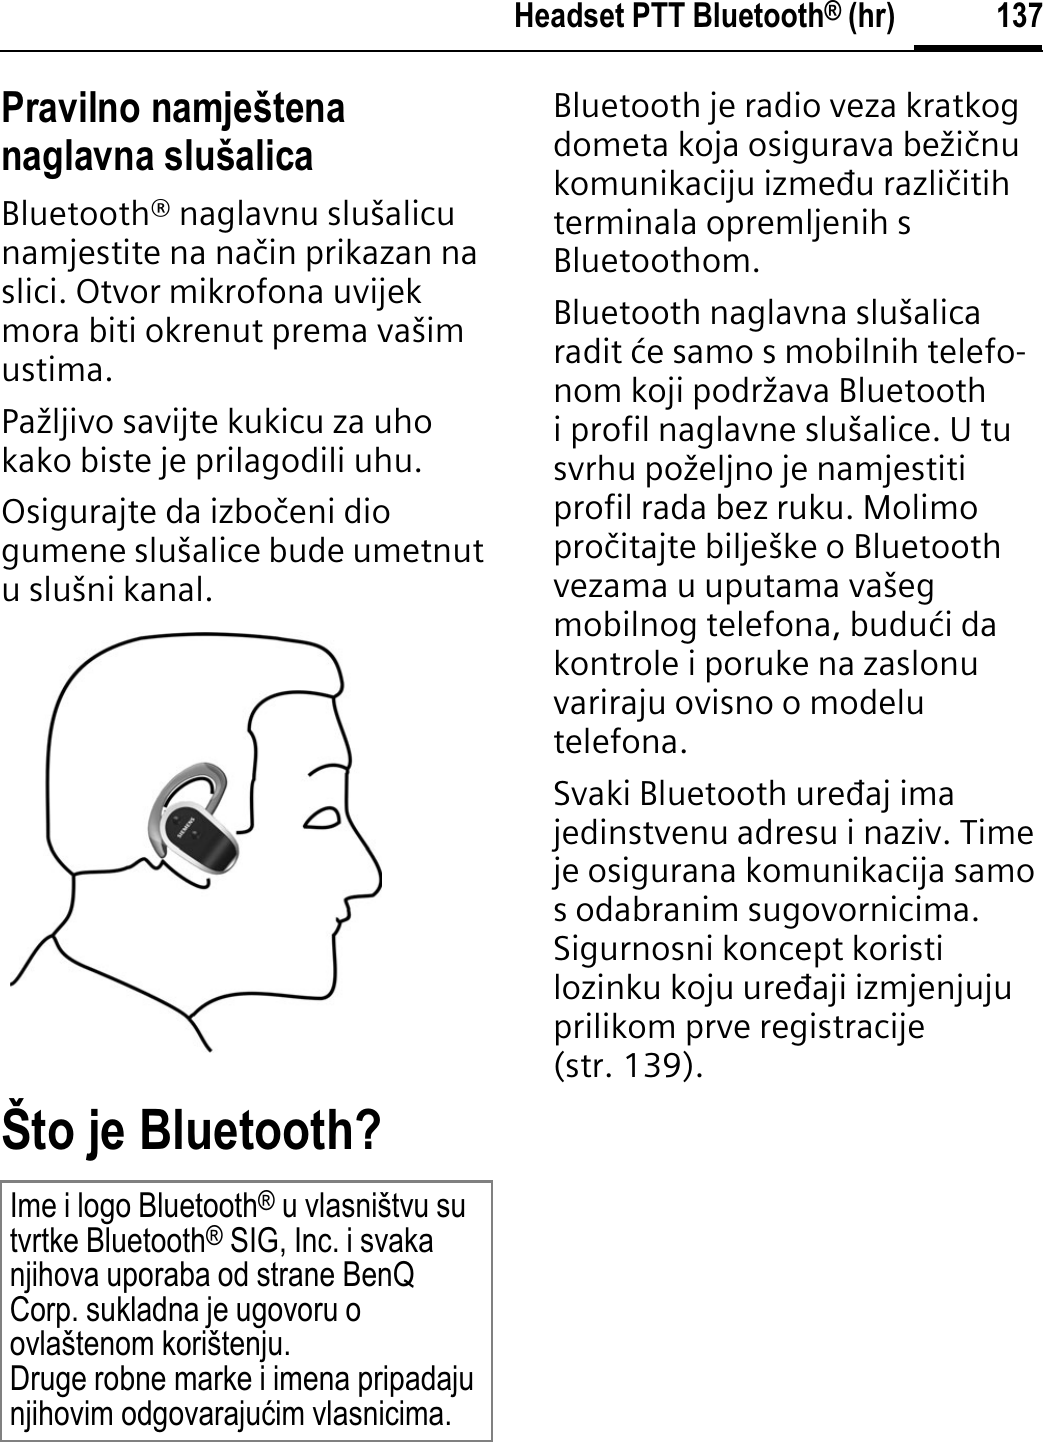 137Headset PTT Bluetooth® (hr)Pravilno namještena naglavna slušalicaBluetooth® naglavnu slušalicu namjestite na naþin prikazan na slici. Otvor mikrofona uvijek mora biti okrenut prema vašim ustima.Pažljivo savijte kukicu za uho kako biste je prilagodili uhu.Osigurajte da izboþeni dio gumene slušalice bude umetnut u slušni kanal.Što je Bluetooth?Bluetooth je radio veza kratkog dometa koja osigurava bežiþnu komunikaciju izmeāu razliþitih terminala opremljenih s Bluetoothom.Bluetooth naglavna slušalica radit øe samo s mobilnih telefo-nom koji podržava Bluetooth i profil naglavne slušalice. U tu svrhu poželjno je namjestiti profil rada bez ruku. Molimo proþitajte bilješke o Bluetooth vezama u uputama vašeg mobilnog telefona, buduøi da kontrole i poruke na zaslonu variraju ovisno o modelu telefona.Svaki Bluetooth ureāaj ima jedinstvenu adresu i naziv. Time je osigurana komunikacija samo s odabranim sugovornicima. Sigurnosni koncept koristi lozinku koju ureāaji izmjenjuju prilikom prve registracije (str. 139).Ime i logo Bluetooth® u vlasništvu su tvrtke Bluetooth® SIG, Inc. i svaka njihova uporaba od strane BenQ Corp. sukladna je ugovoru o ovlaštenom korištenju. Druge robne marke i imena pripadaju njihovim odgovarajuüim vlasnicima.